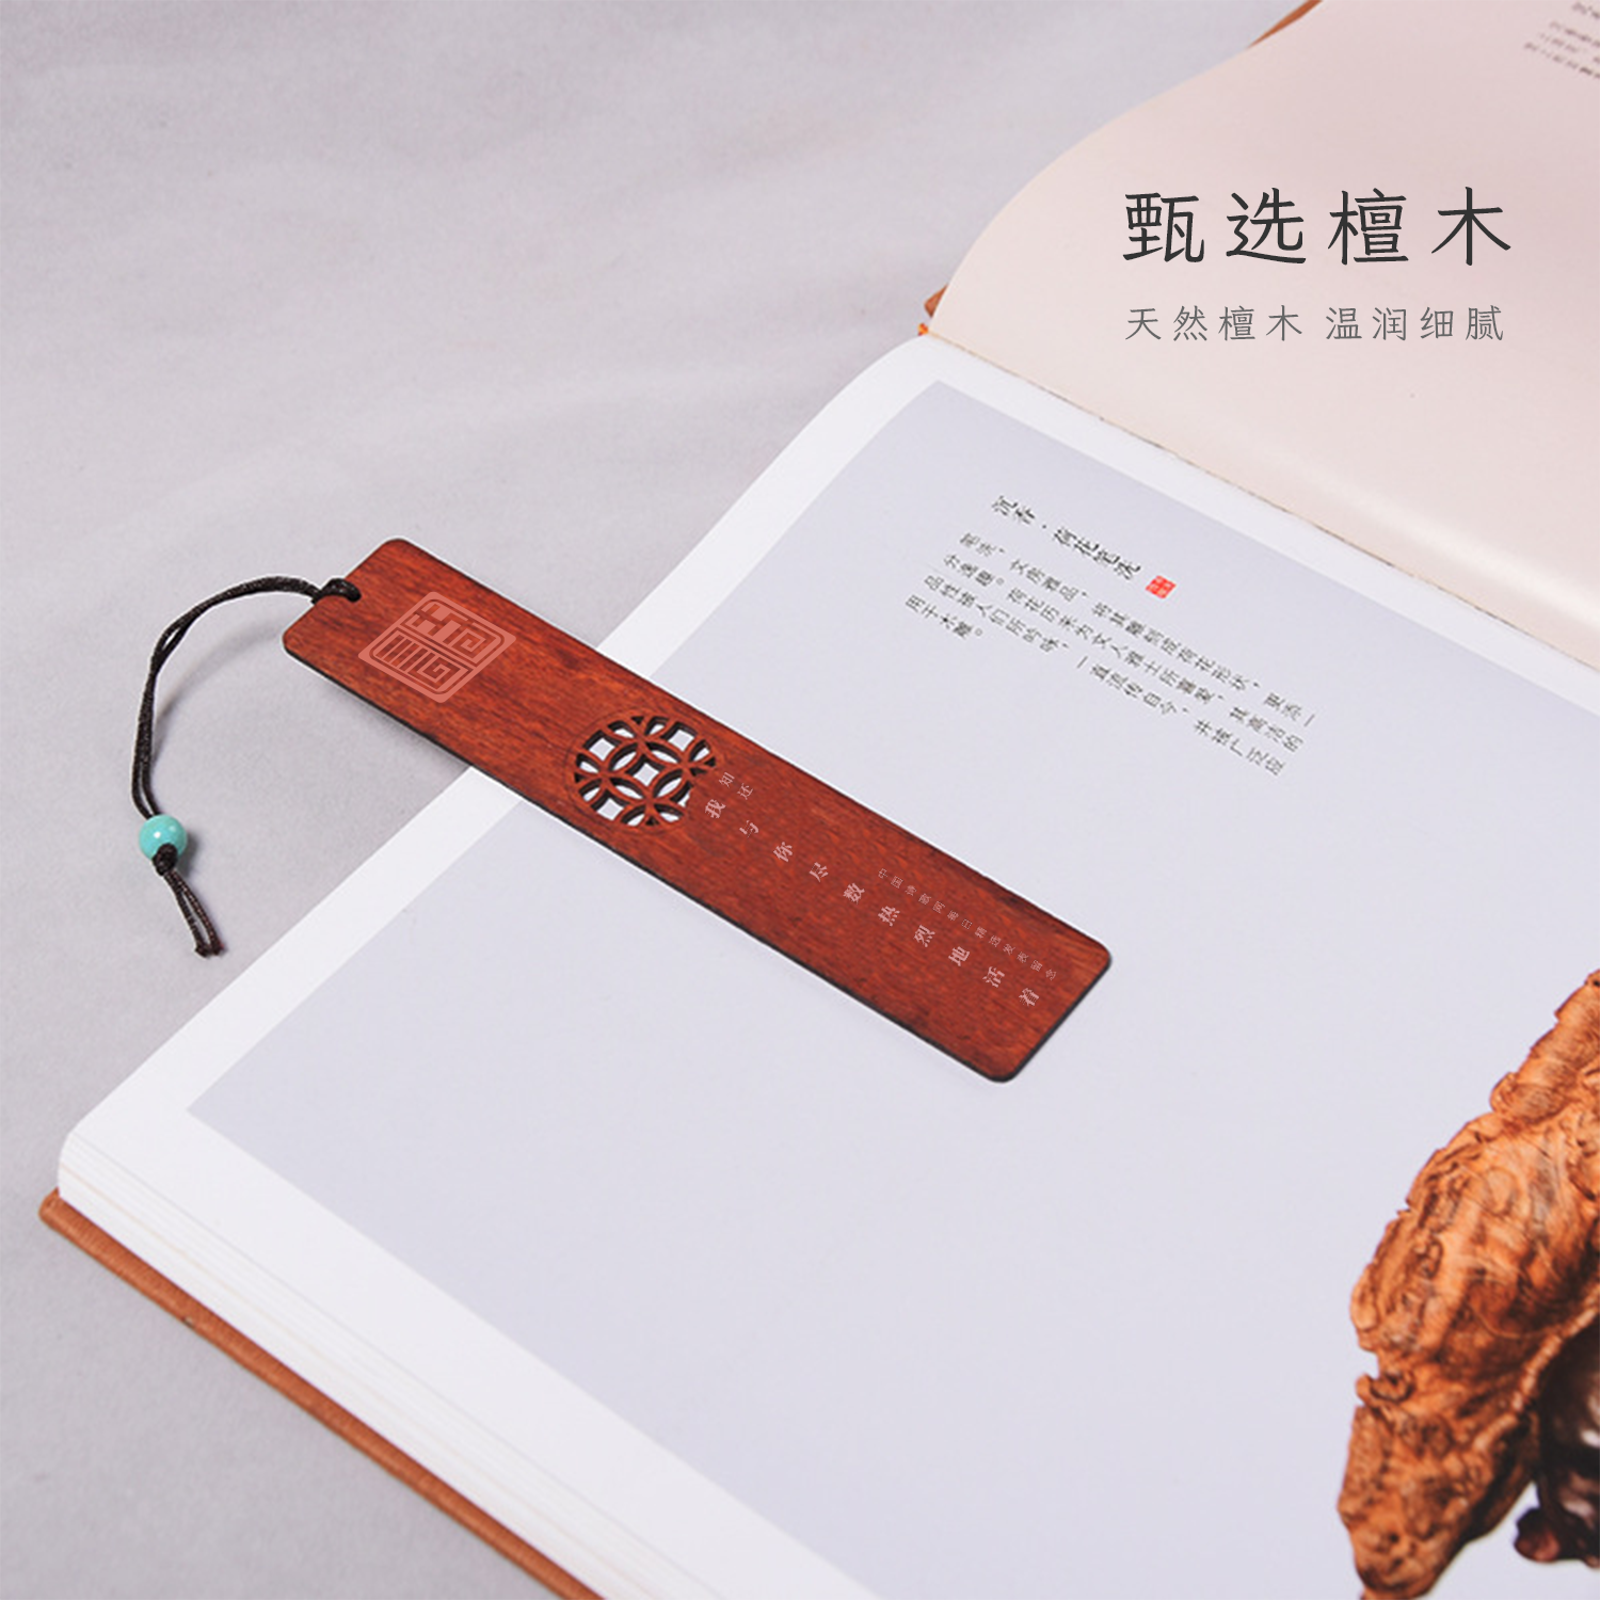 中国诗歌网授权书签套盒4